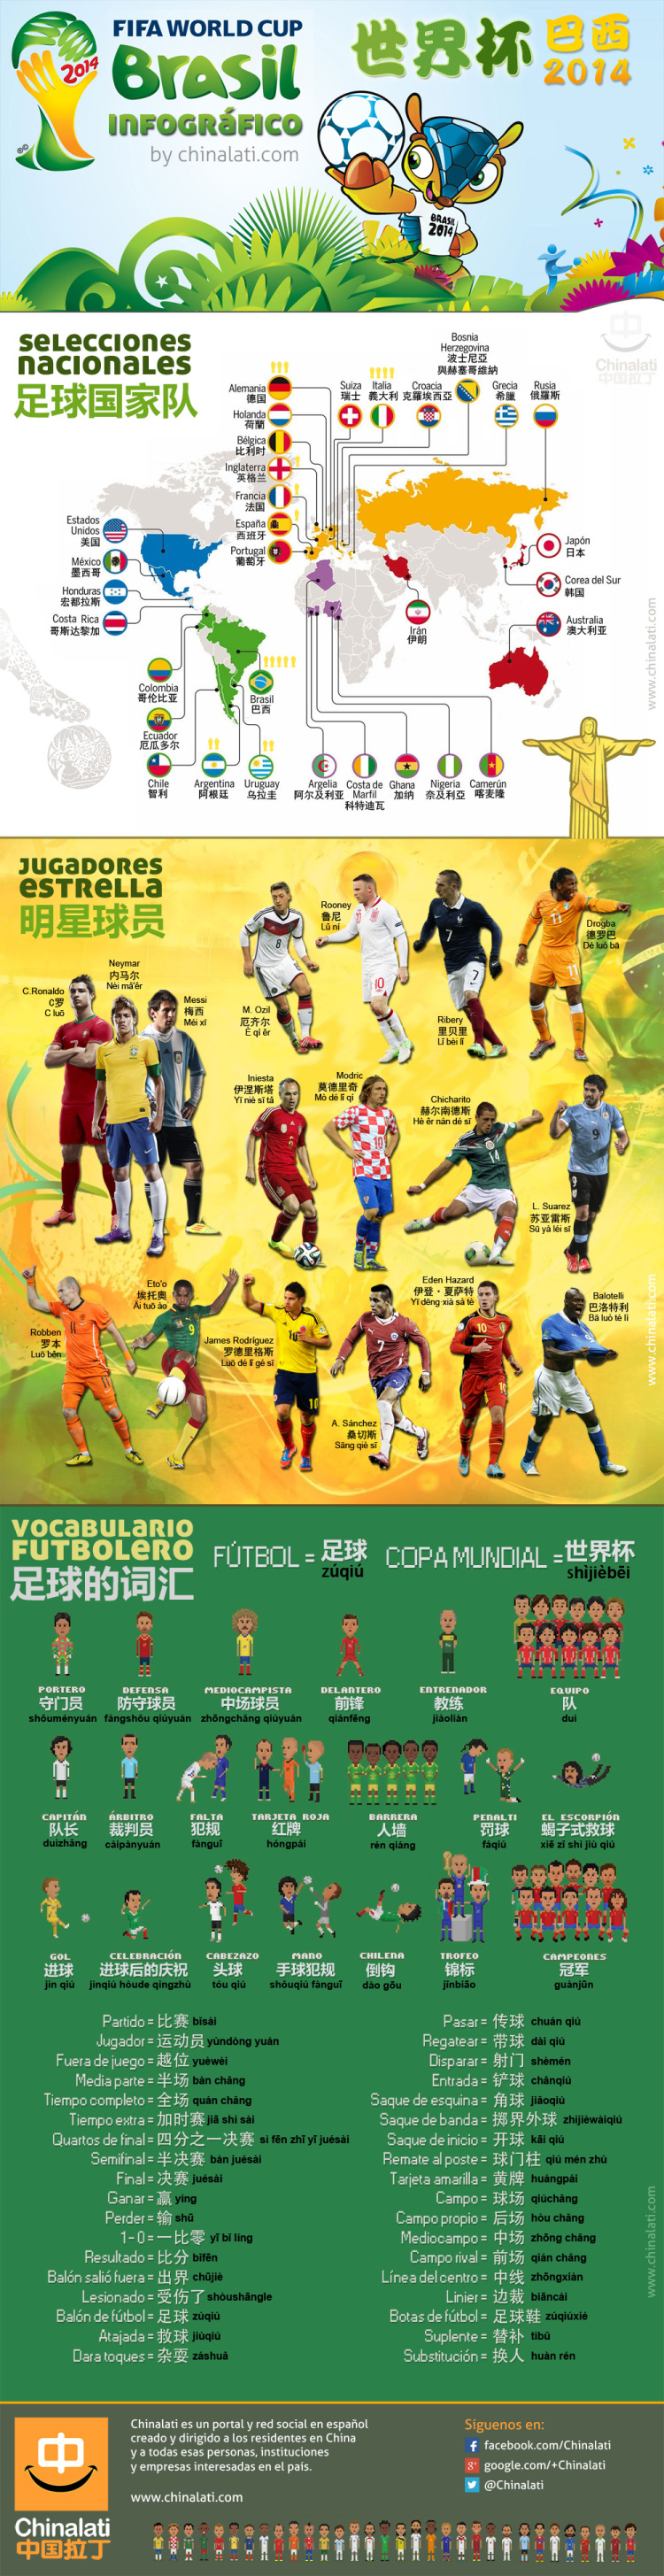 El vocabulario en chino para el Mundial de Brasil